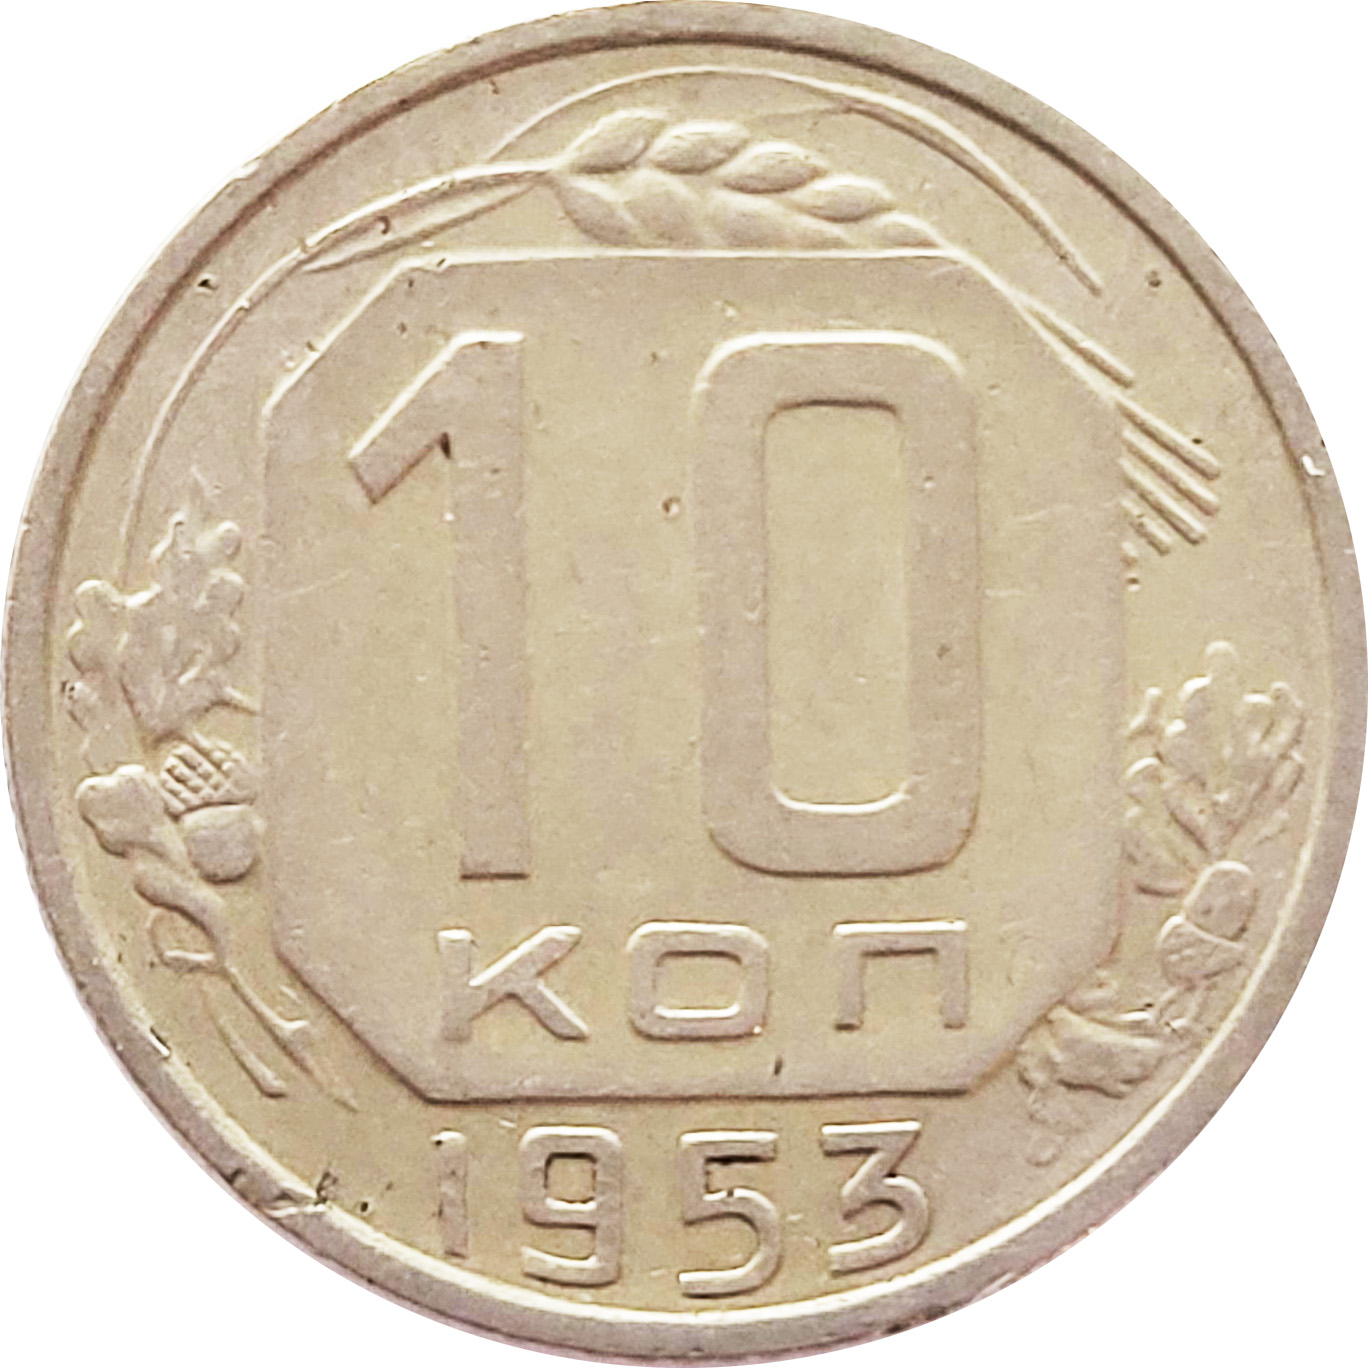 1954 года купить. Копейки СССР 1954 года. Монеты 1954 года фото. Монеты 1954 года русские цена.